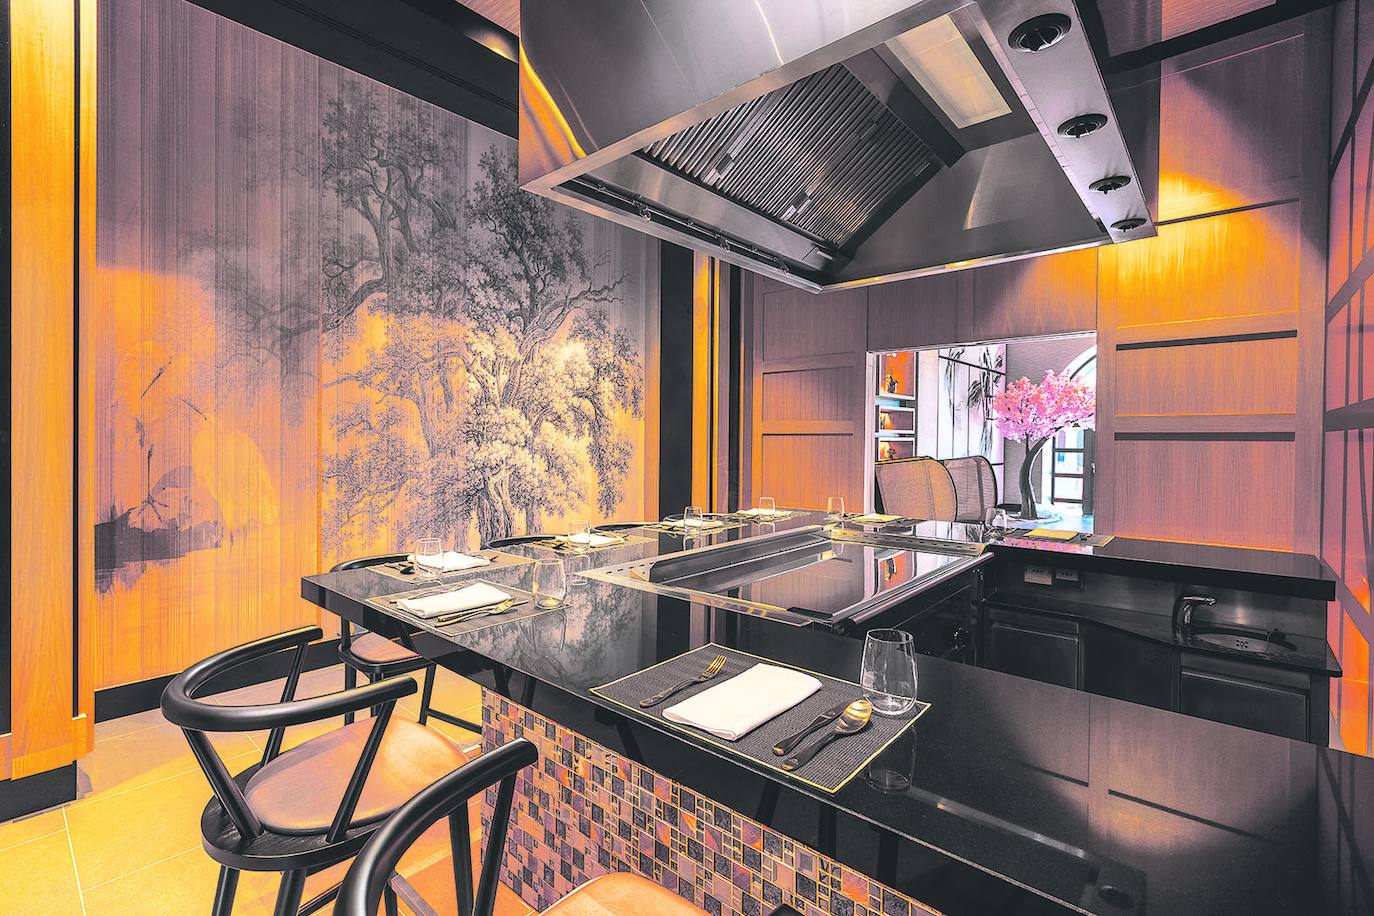 El nuevo concepto de cocina asiática de Kabuki cobra vida en el Restaurante NIHAO del hotel Lopesan Costa Meloneras